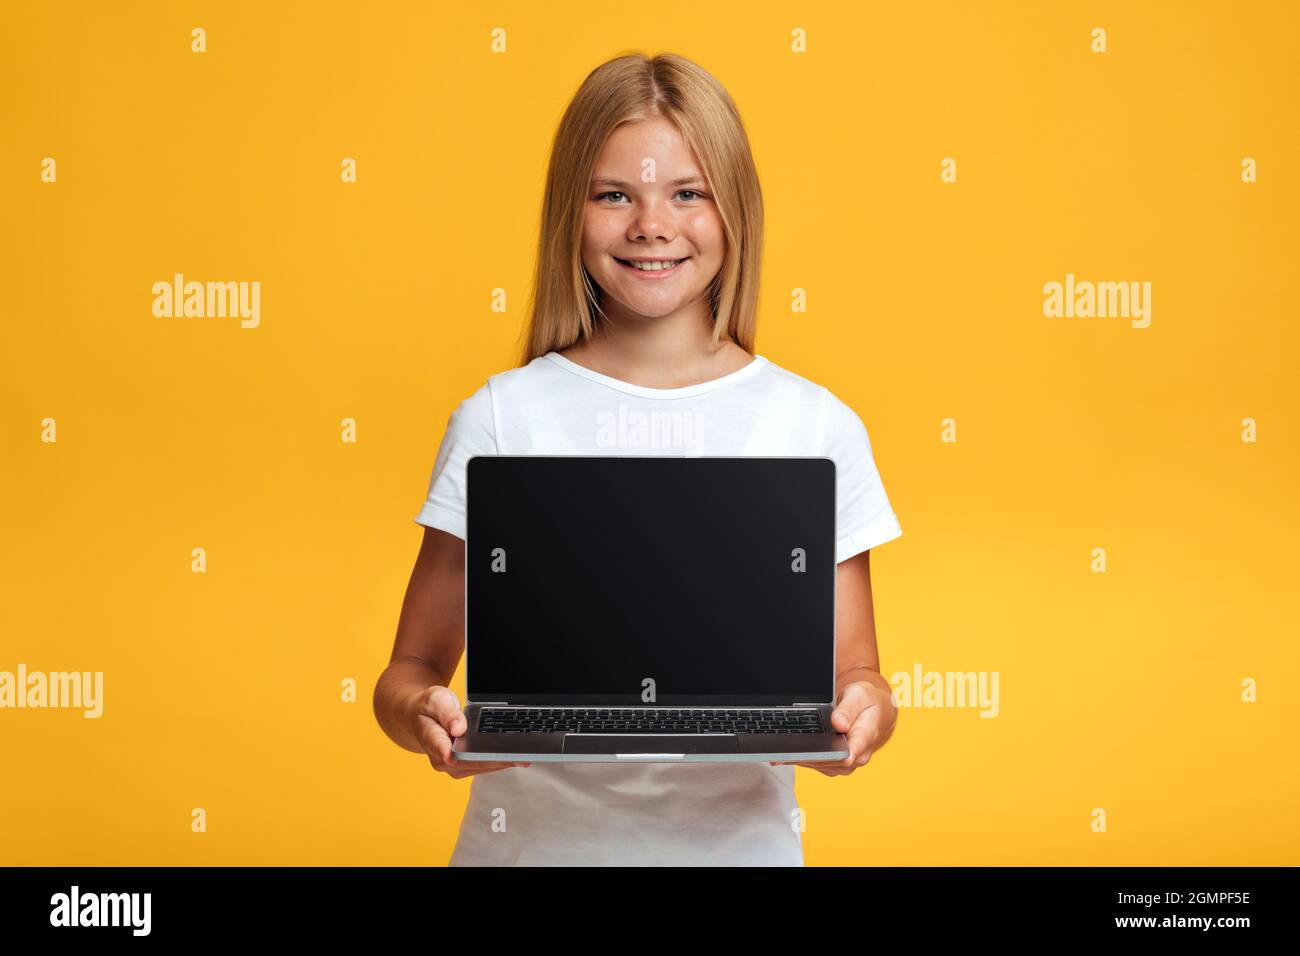 Allegro adolescente bionda ragazza pupilla show laptop con schermo vuoto, isolato su sfondo giallo Foto Stock